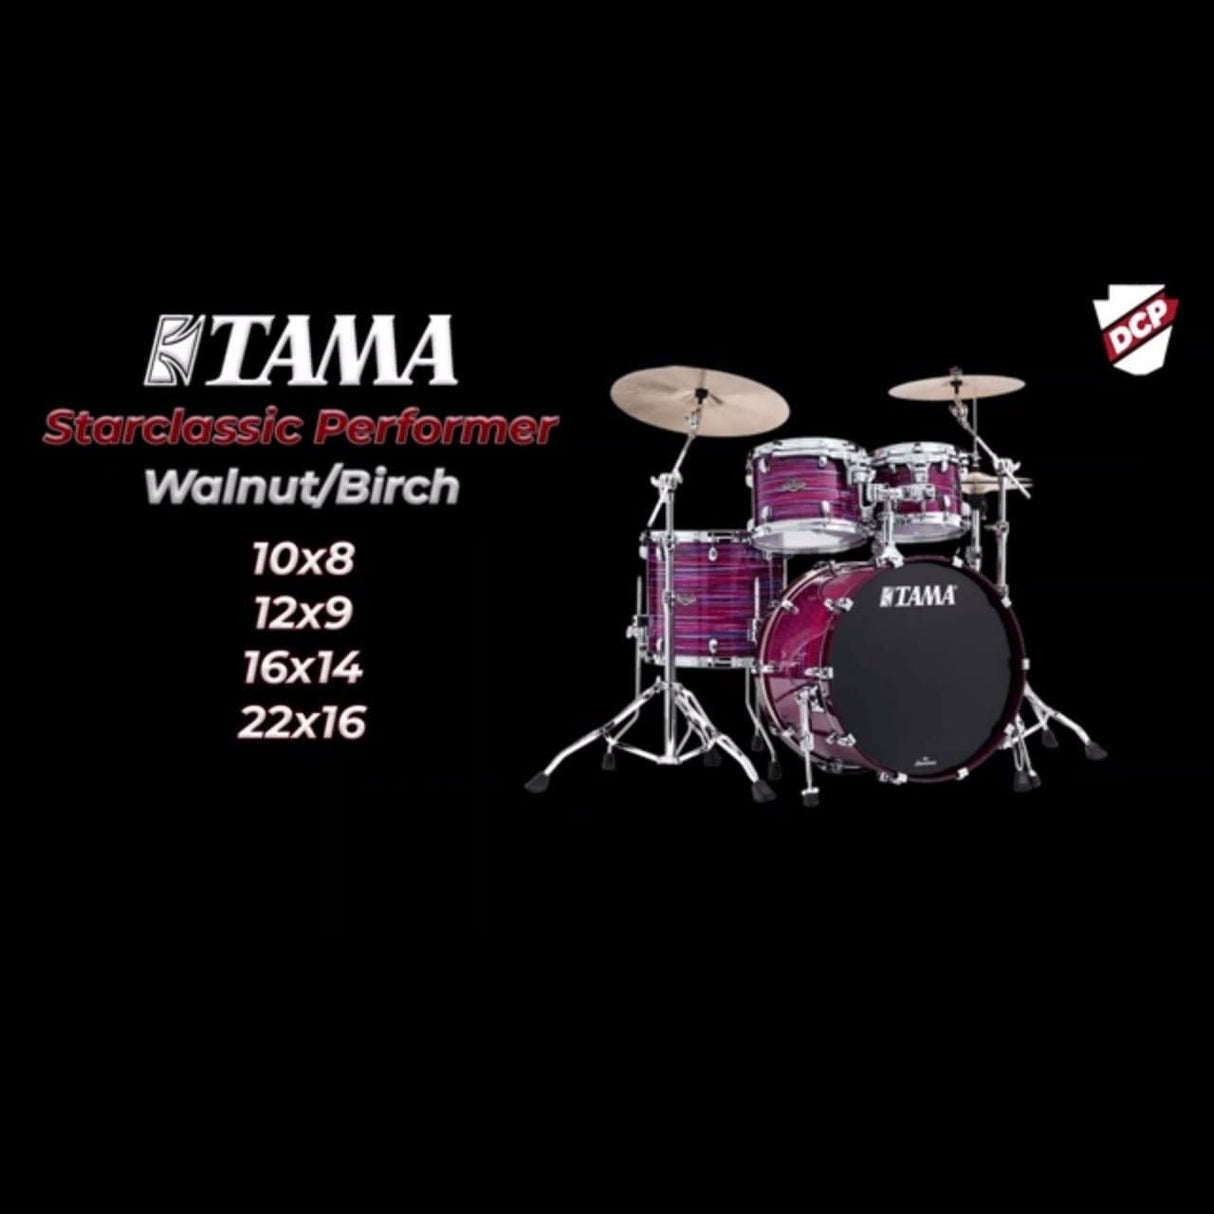 Tama WBR42SCCO Starclassic Walnut/Birch 4pc Drum Set Charcoal Onyx